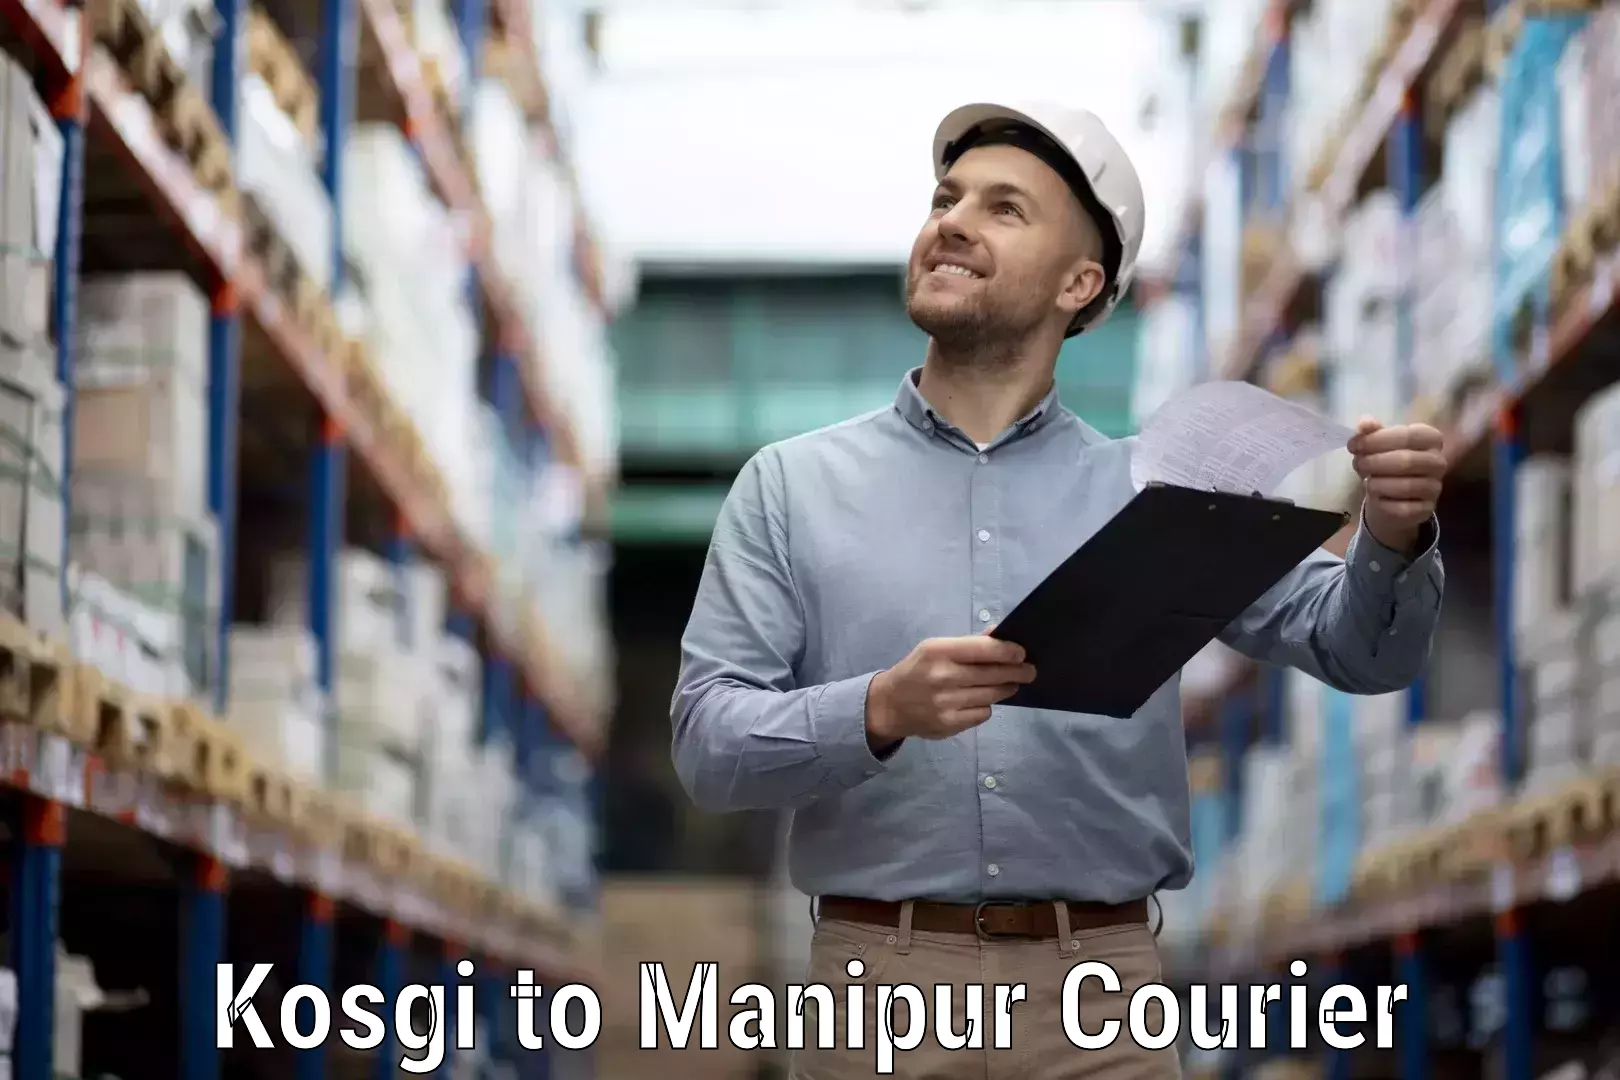 Courier app Kosgi to Manipur